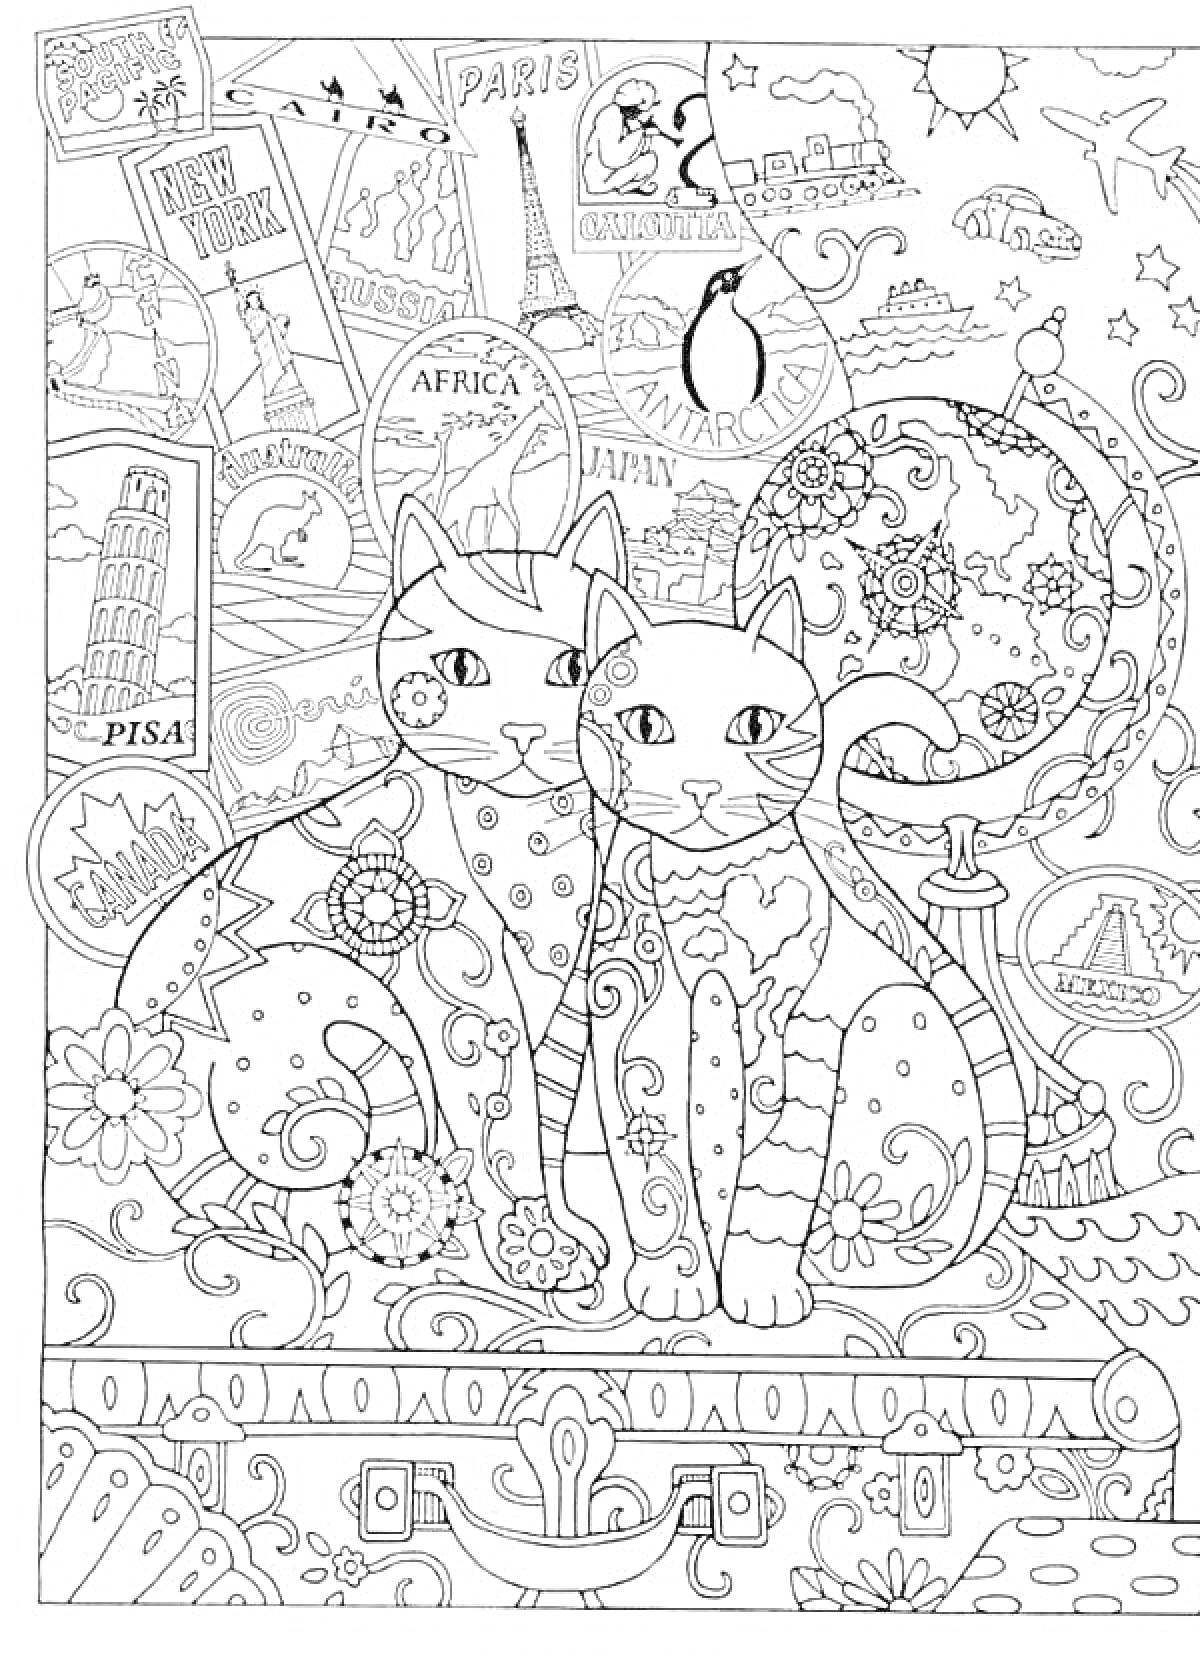 РаскраскаДве кошки на декоративном фоне с путешествиями, цветами и различными достопримечательностями